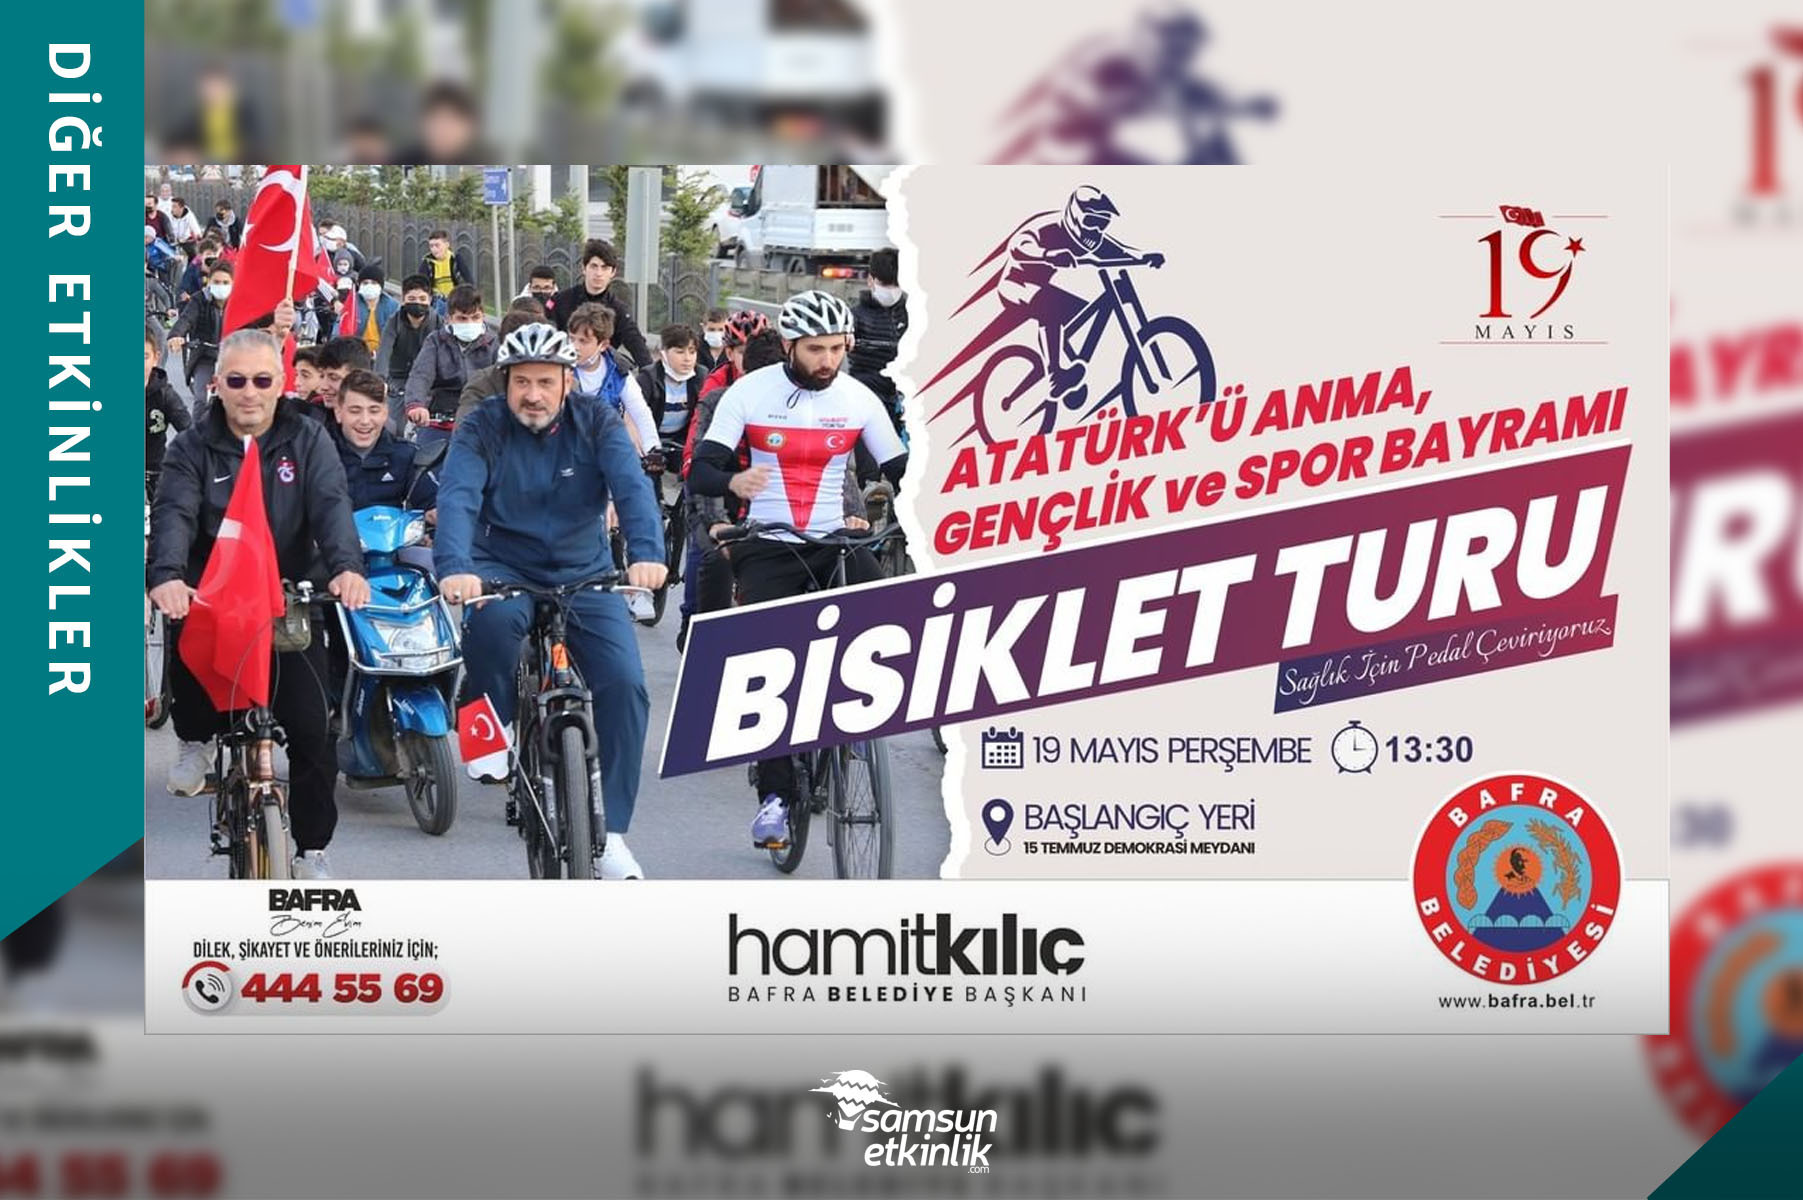 Bafra Belediyesi 19 Mayıs Gençlik ve Spor Bayramı Bisiklet Turu